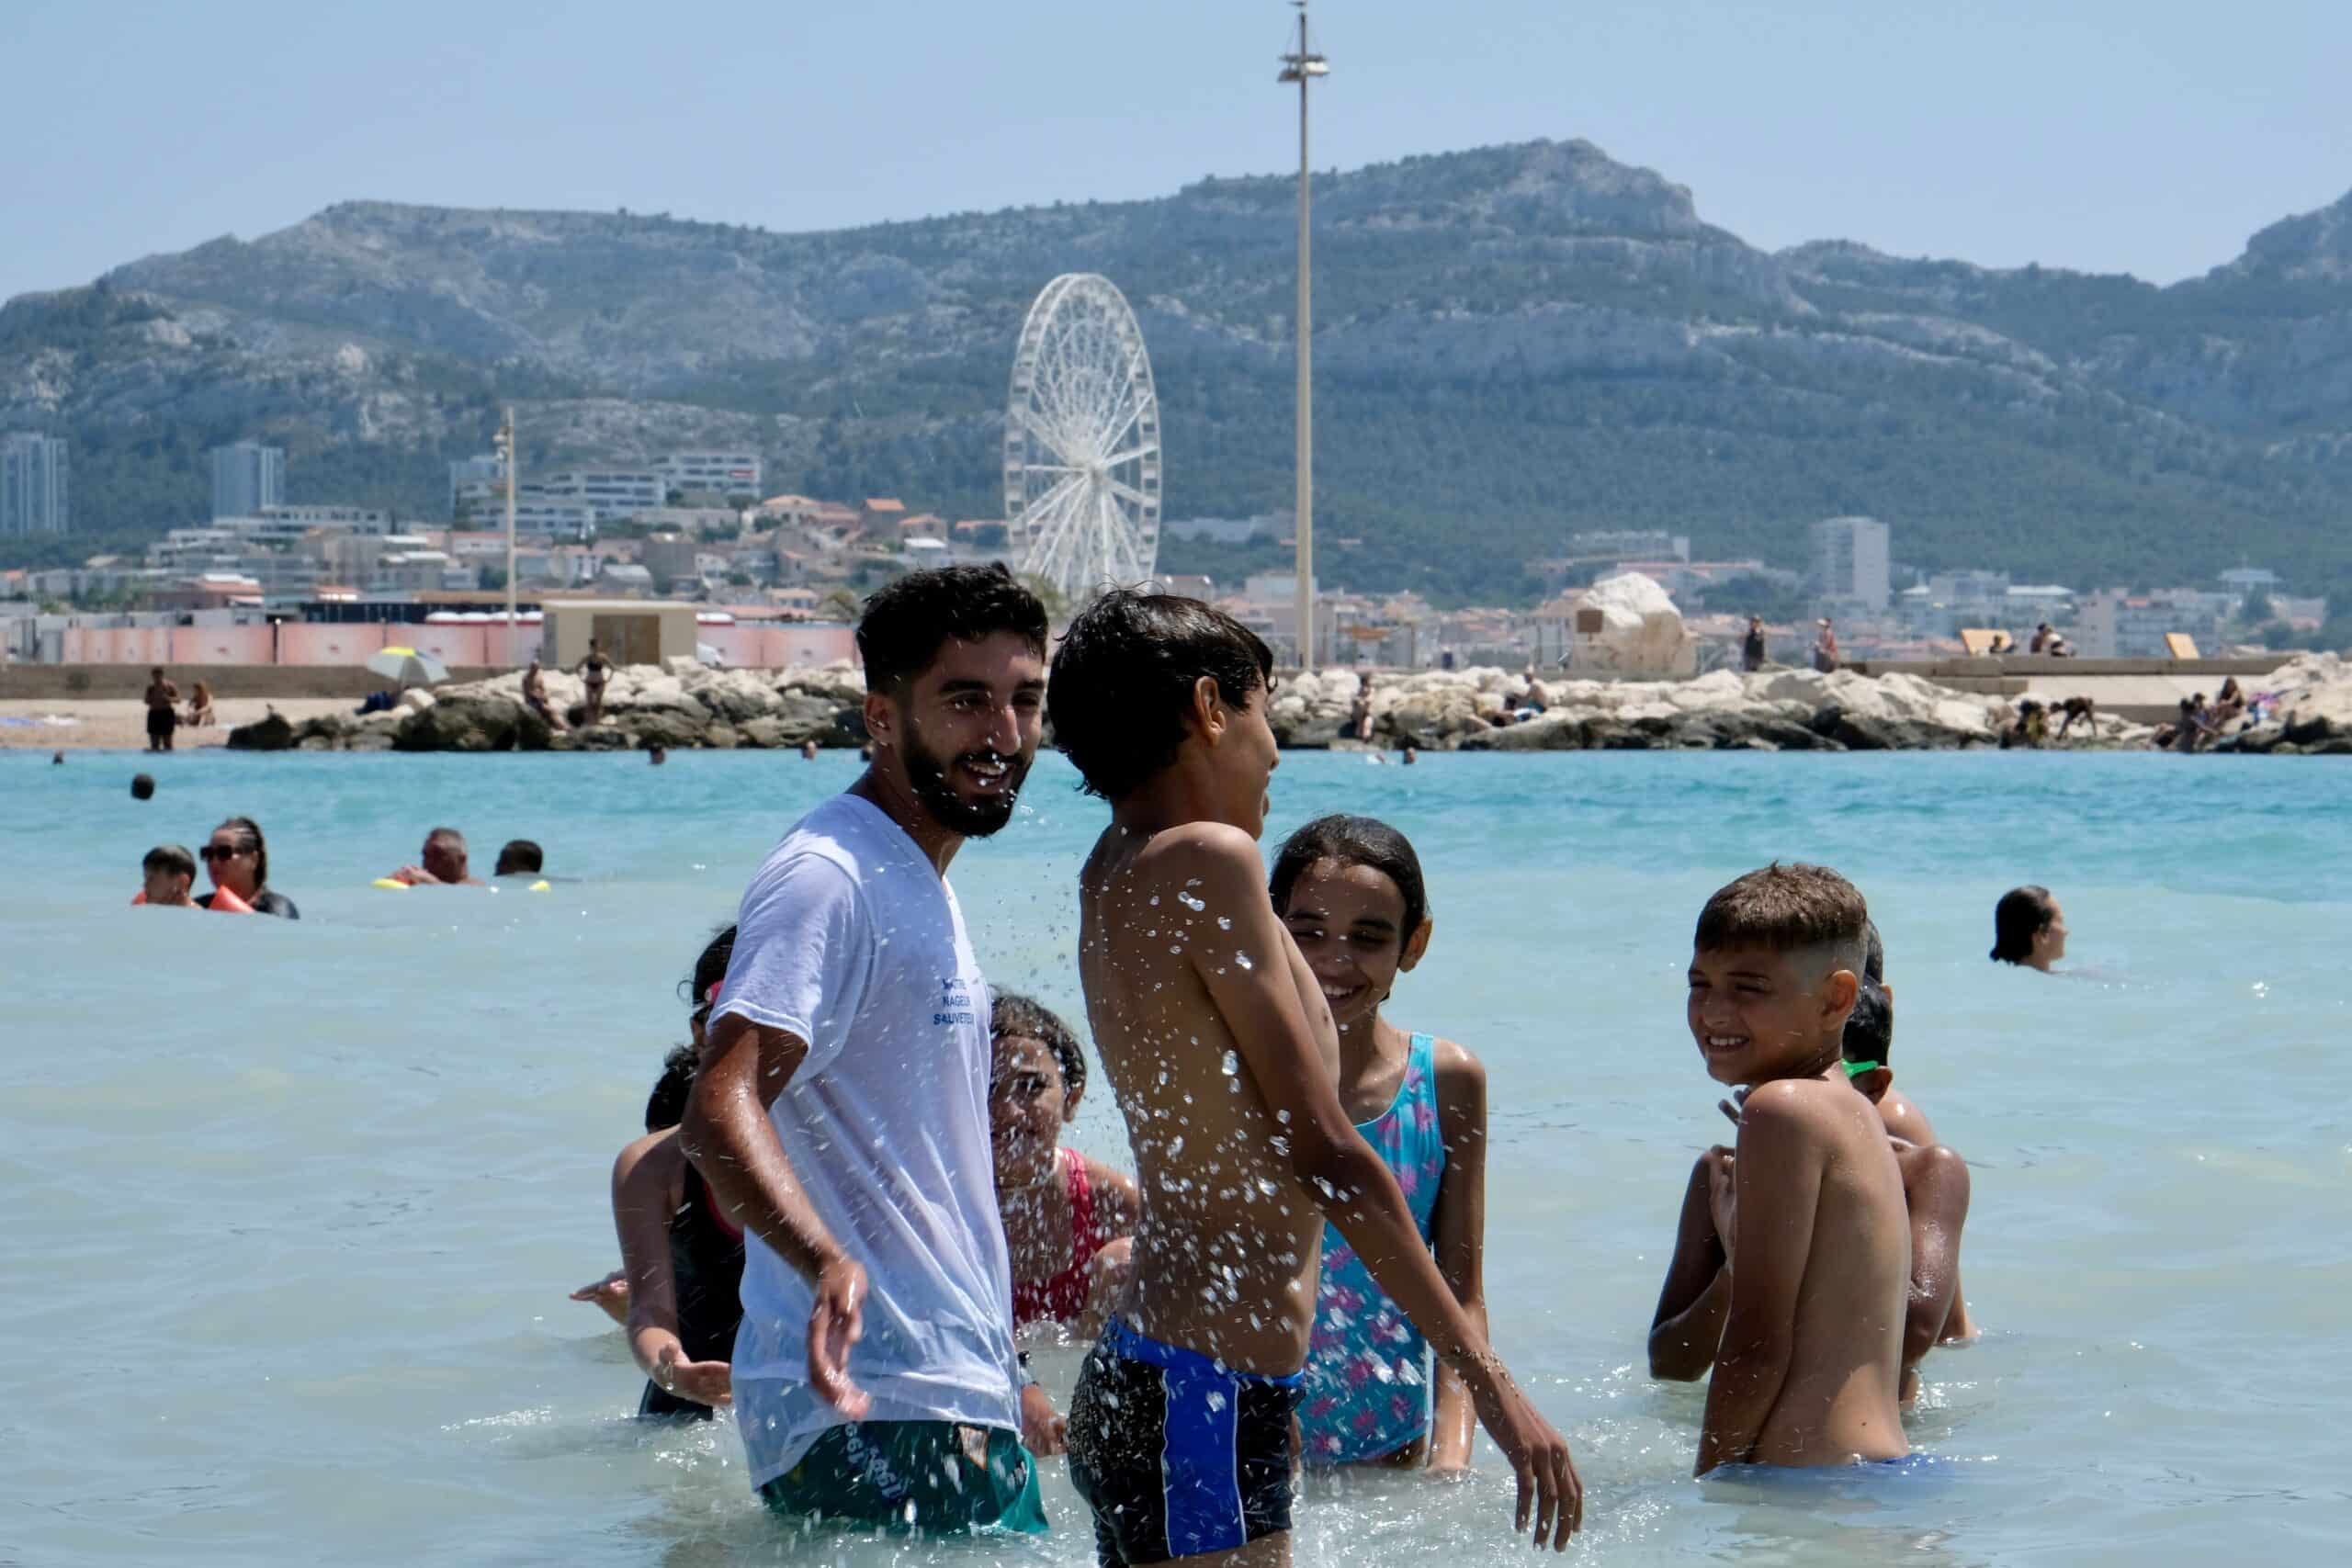 bassins apprentissage marseille, Vidéo | Marseille déploie cet été des bassins pour apprendre gratuitement à nager, Made in Marseille